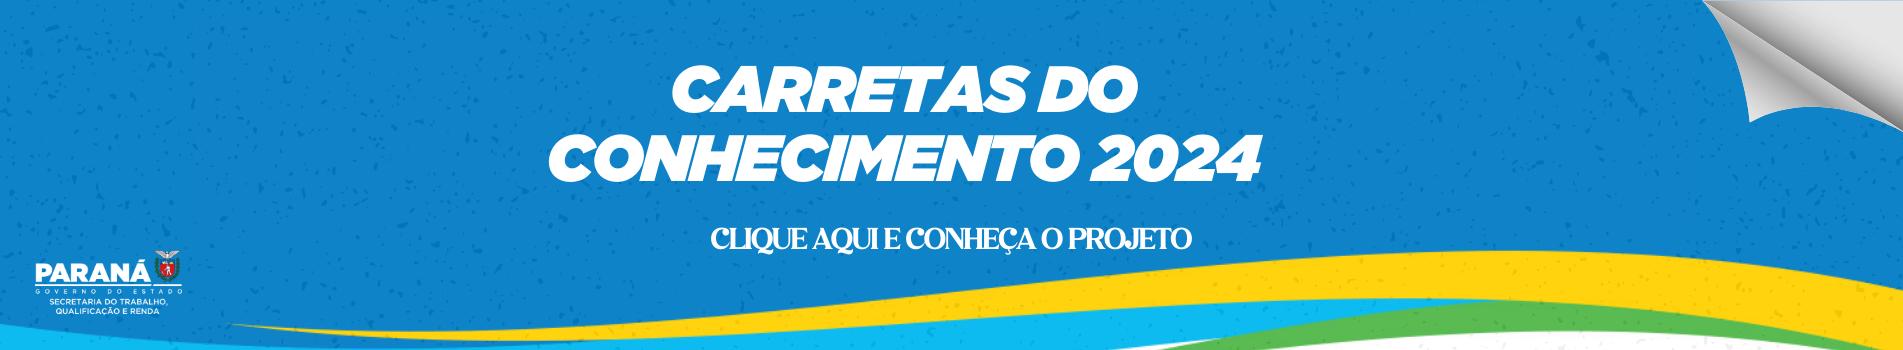 Banner Carretas do Conhecimento 2024